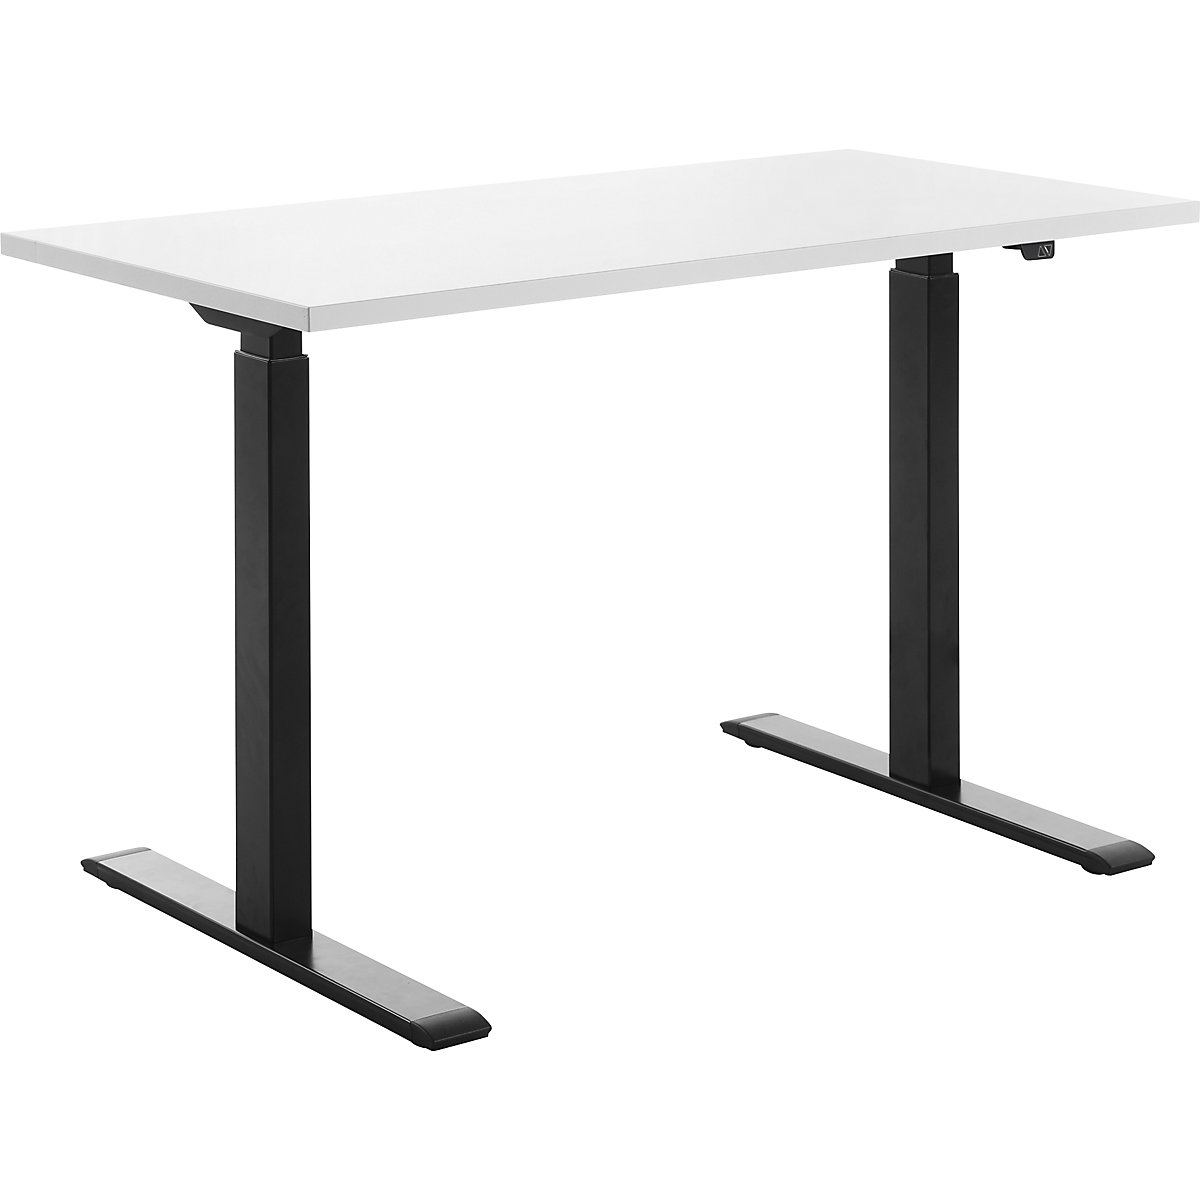 Topstar – Psací stůl s elektrickým přestavováním výšky, š x h 1200 x 600 mm, deska bílá, podstavec černá